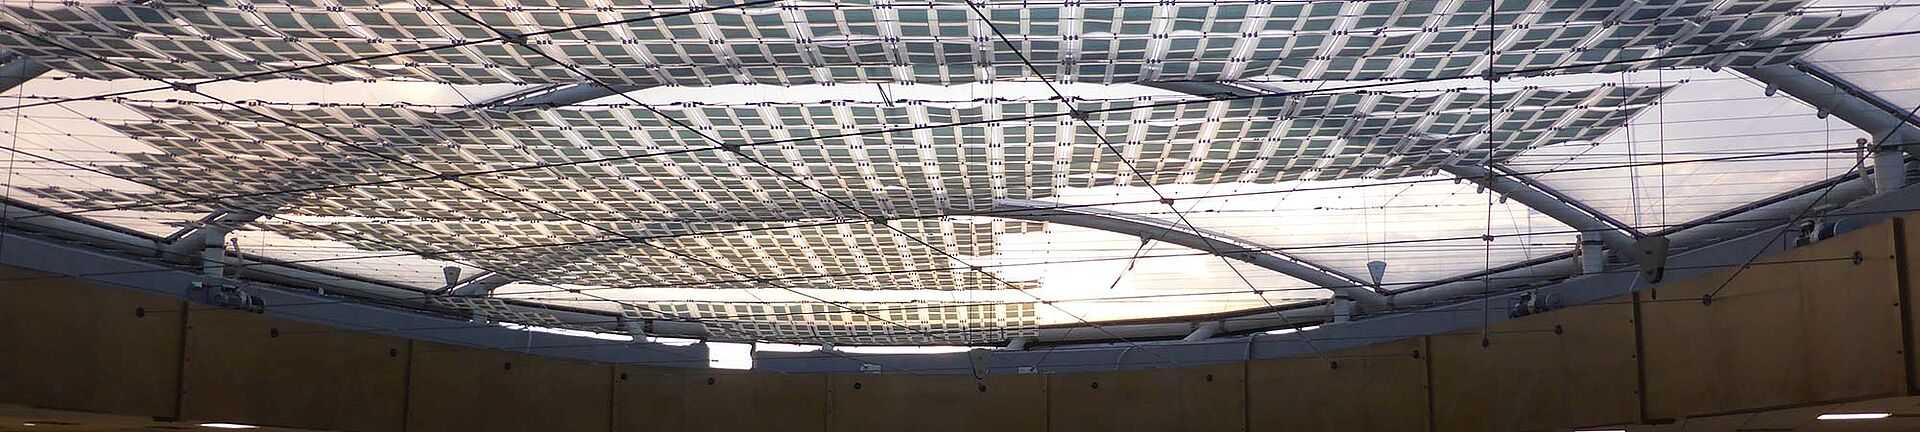 Organische Photovoltaic OPV Carl Stahl Architektur Seilsysteme